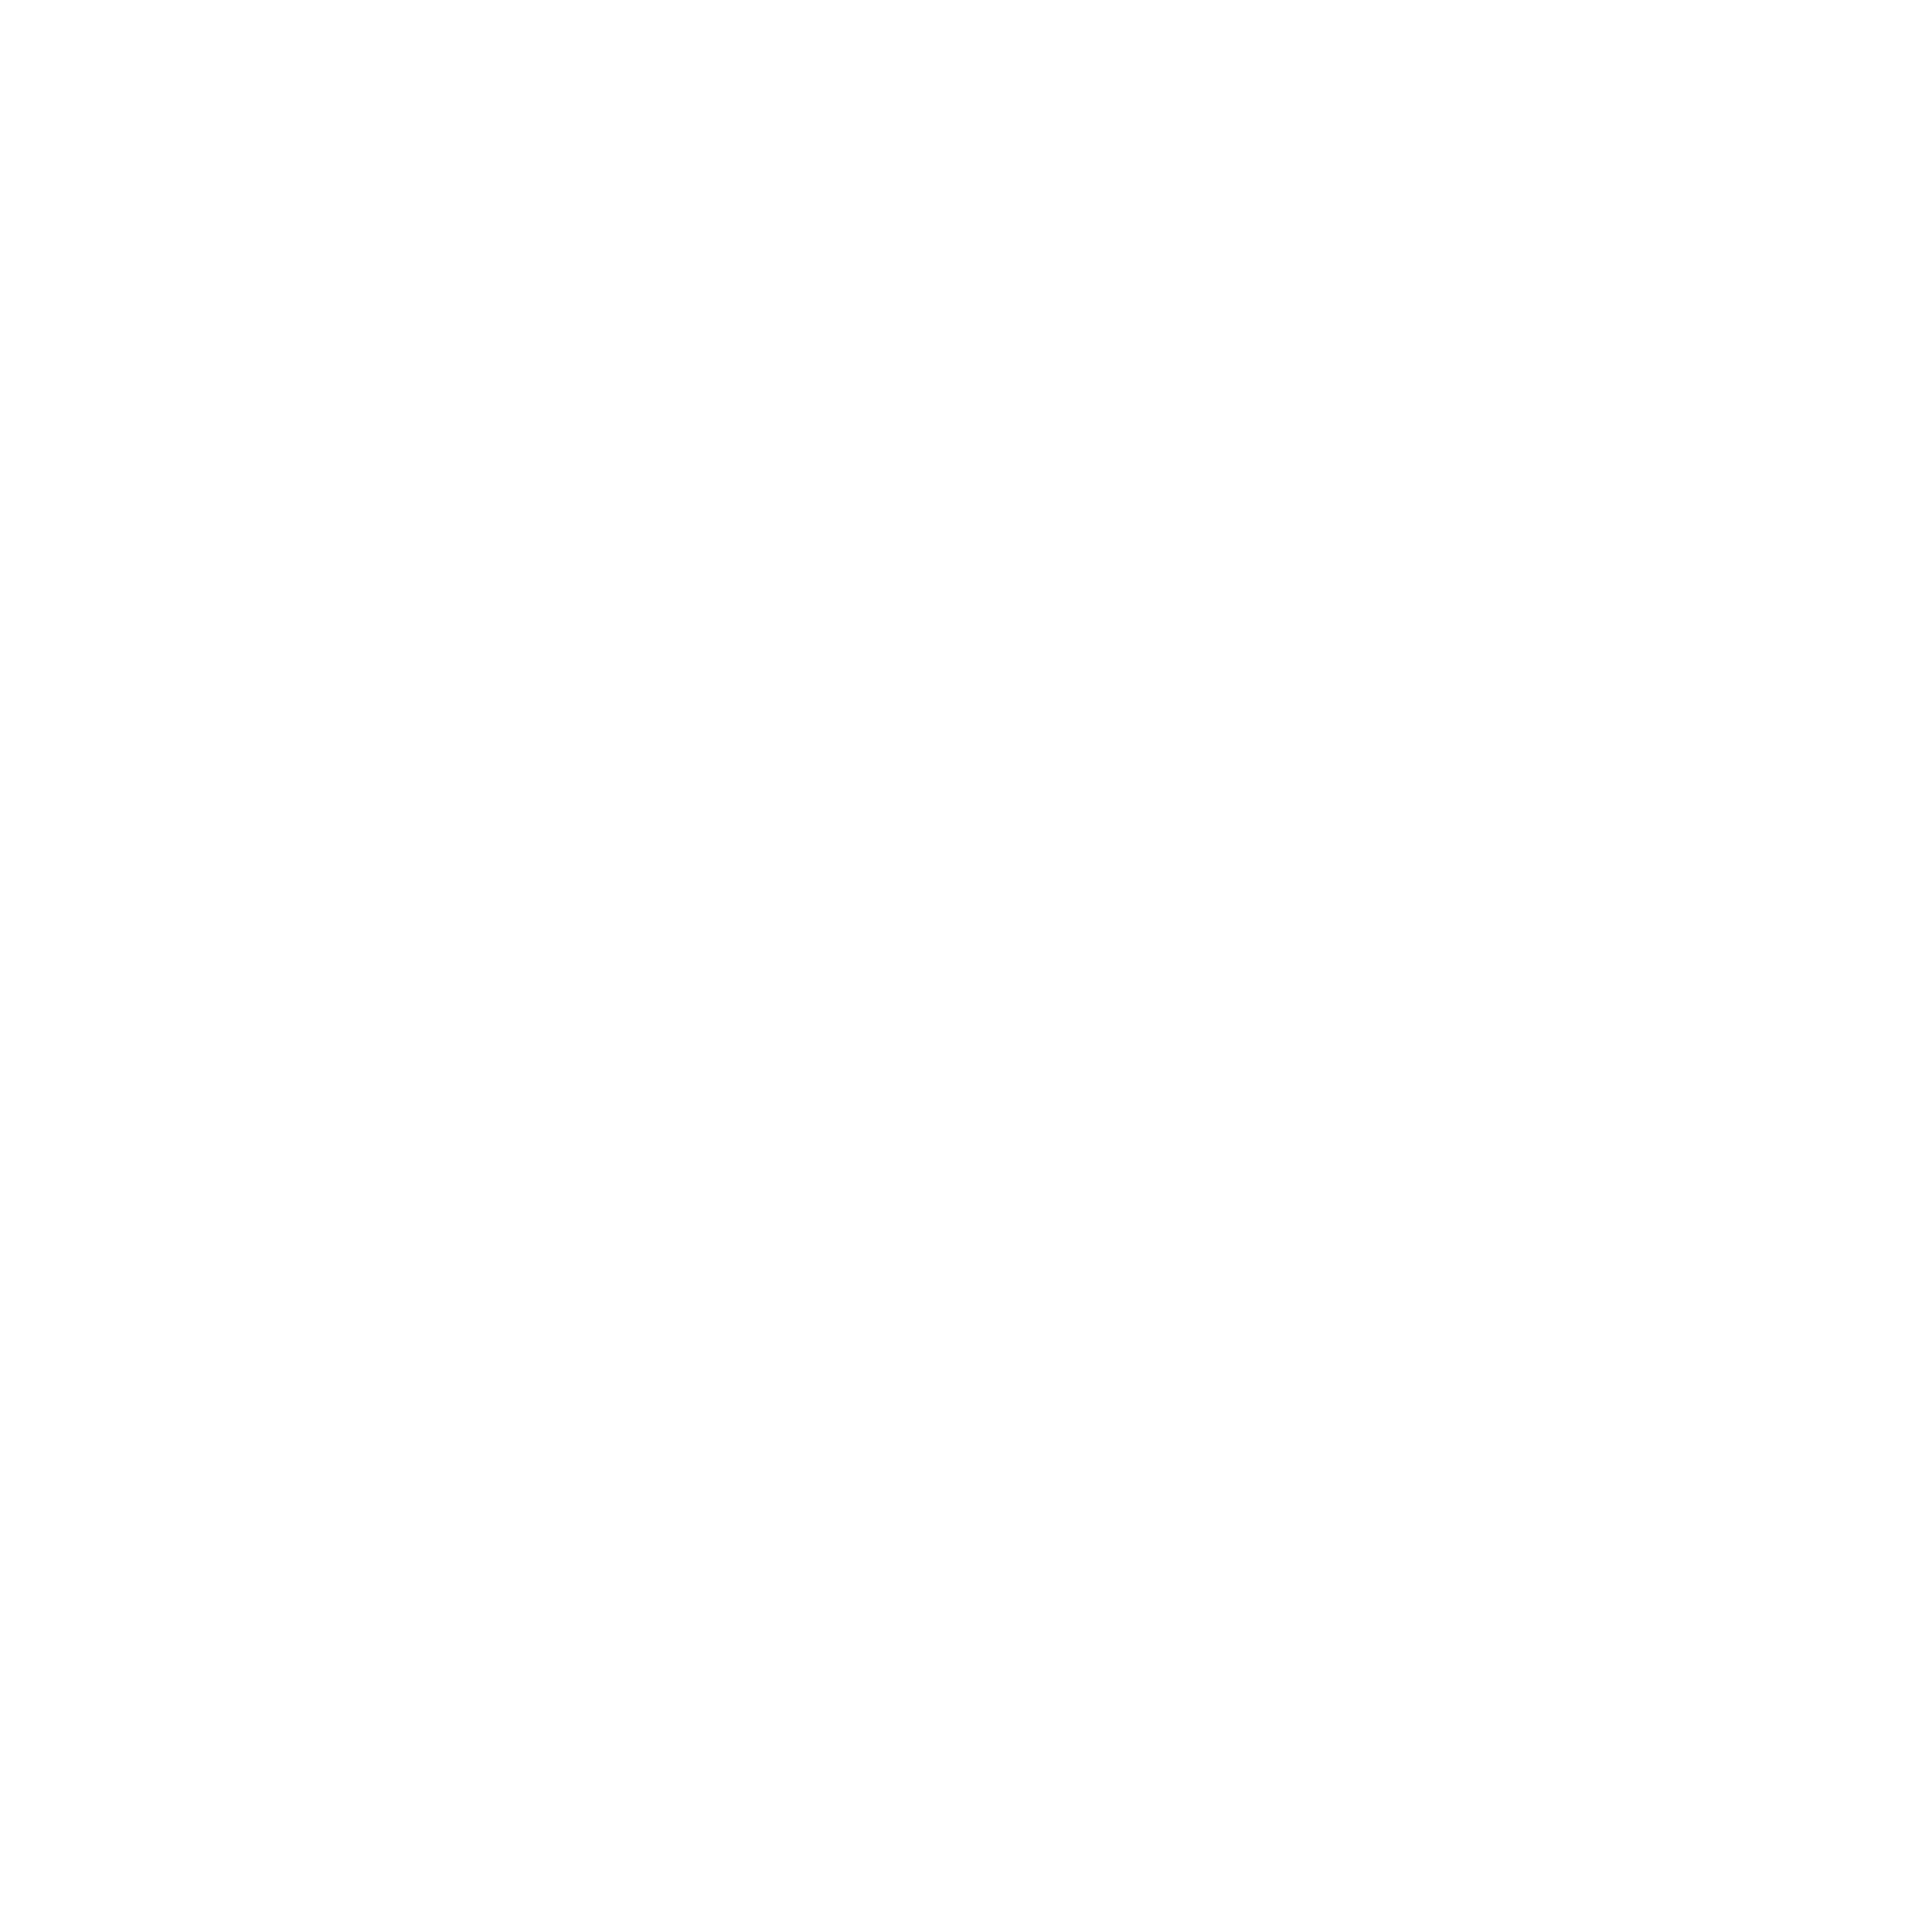 Francouzský institut